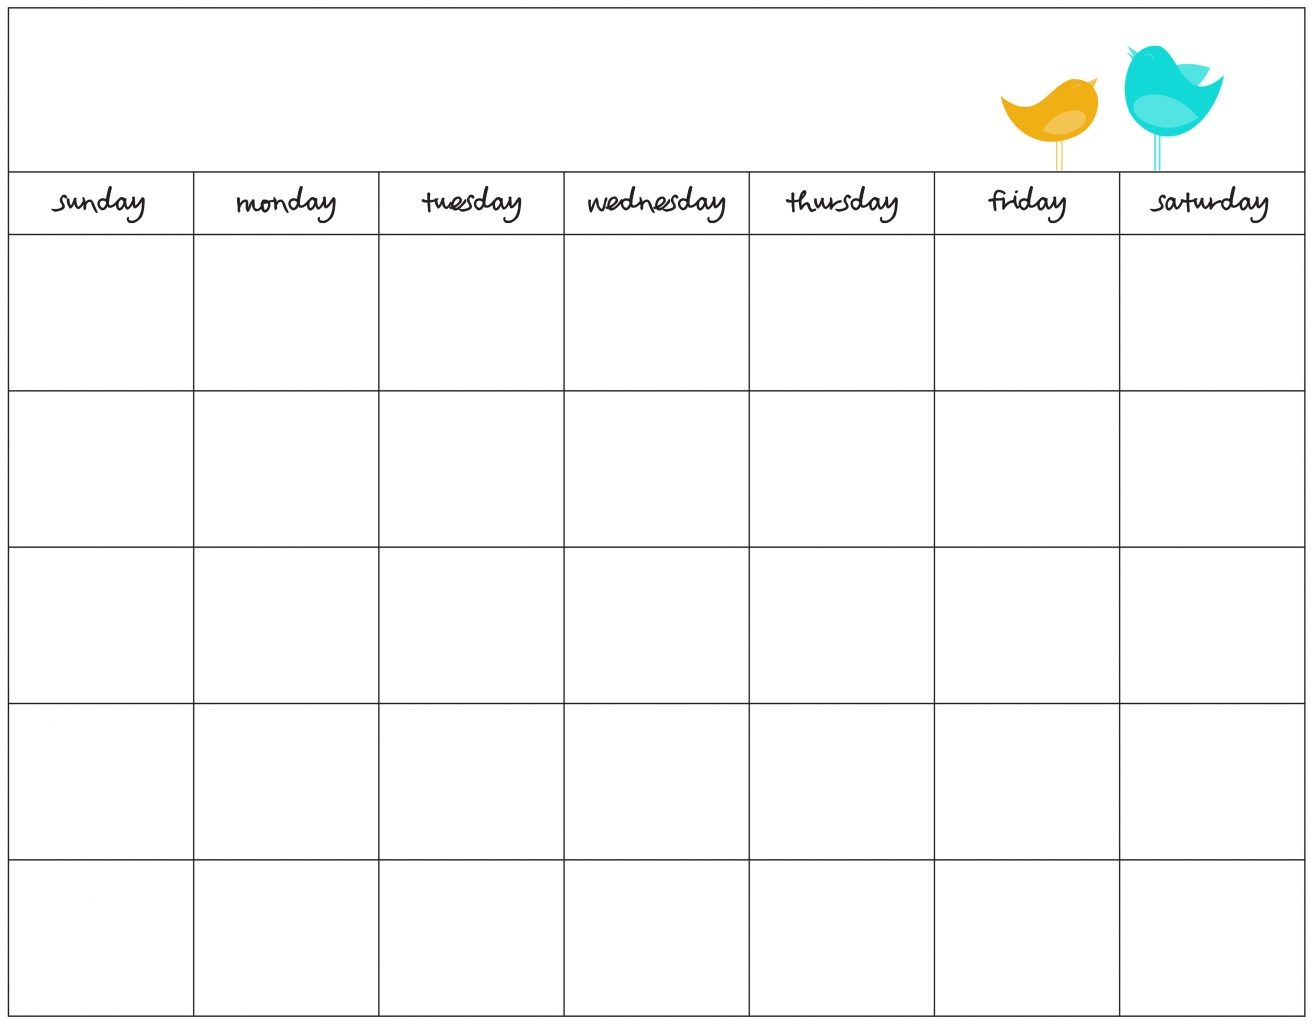 Free Weekly Schedule Maker Blank Work Schedules Template - Free Printable Work Schedule Maker